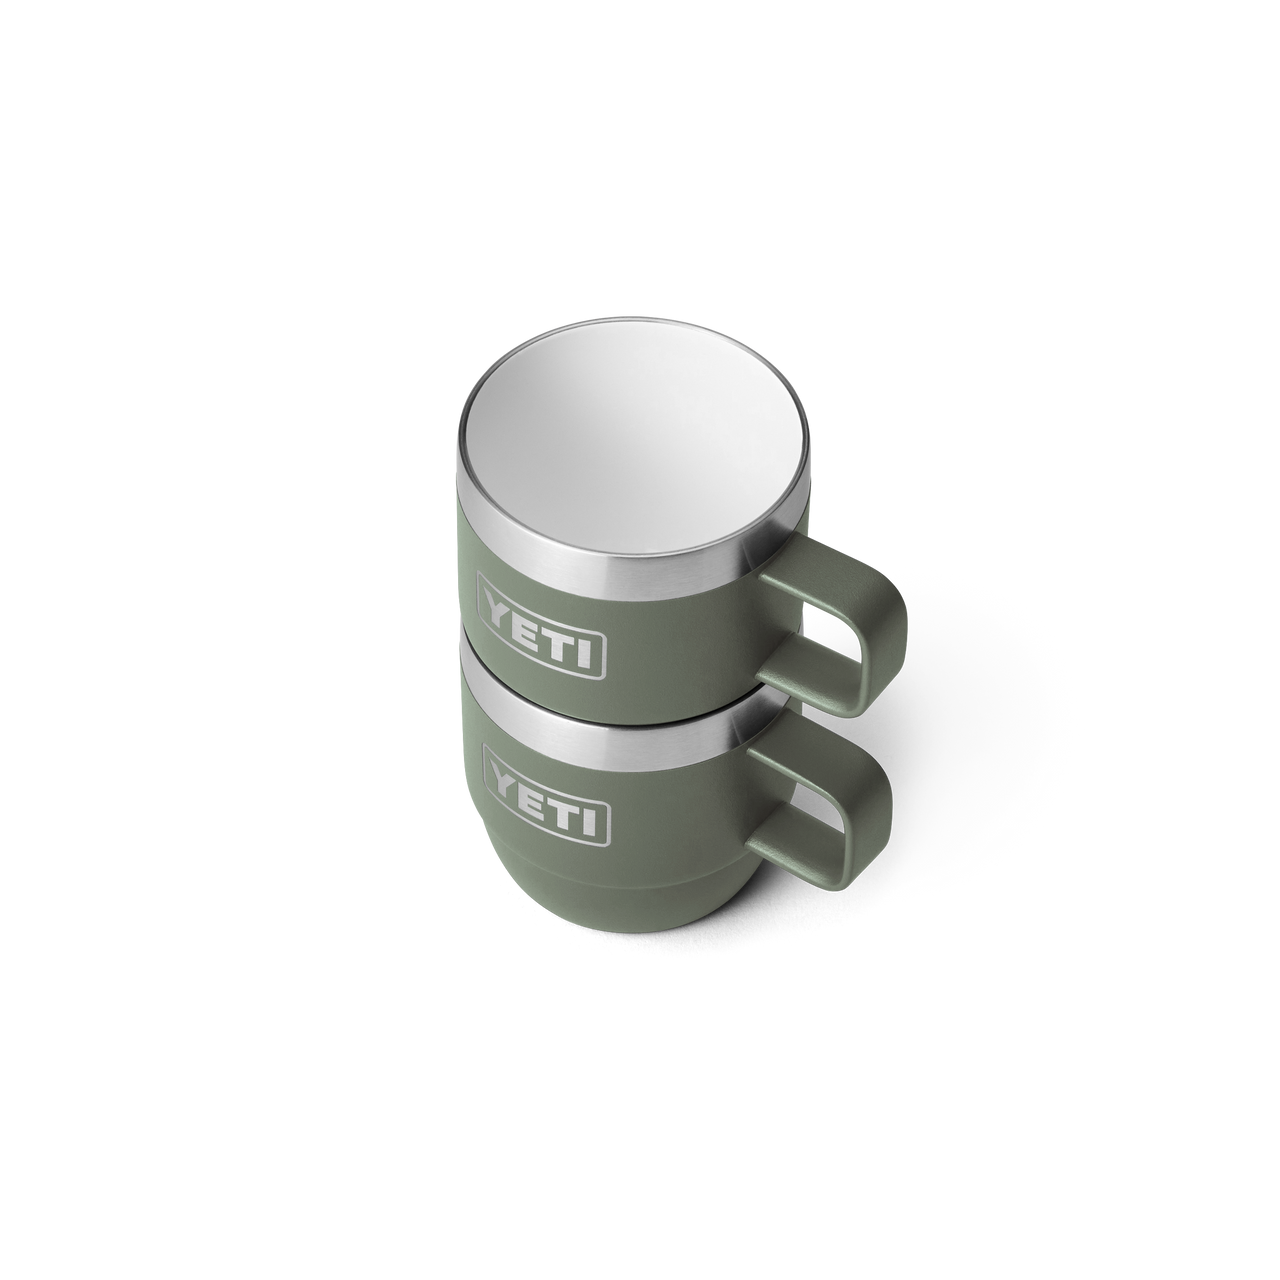 YETI-Rambler 6 oz Mug 2 Pk White